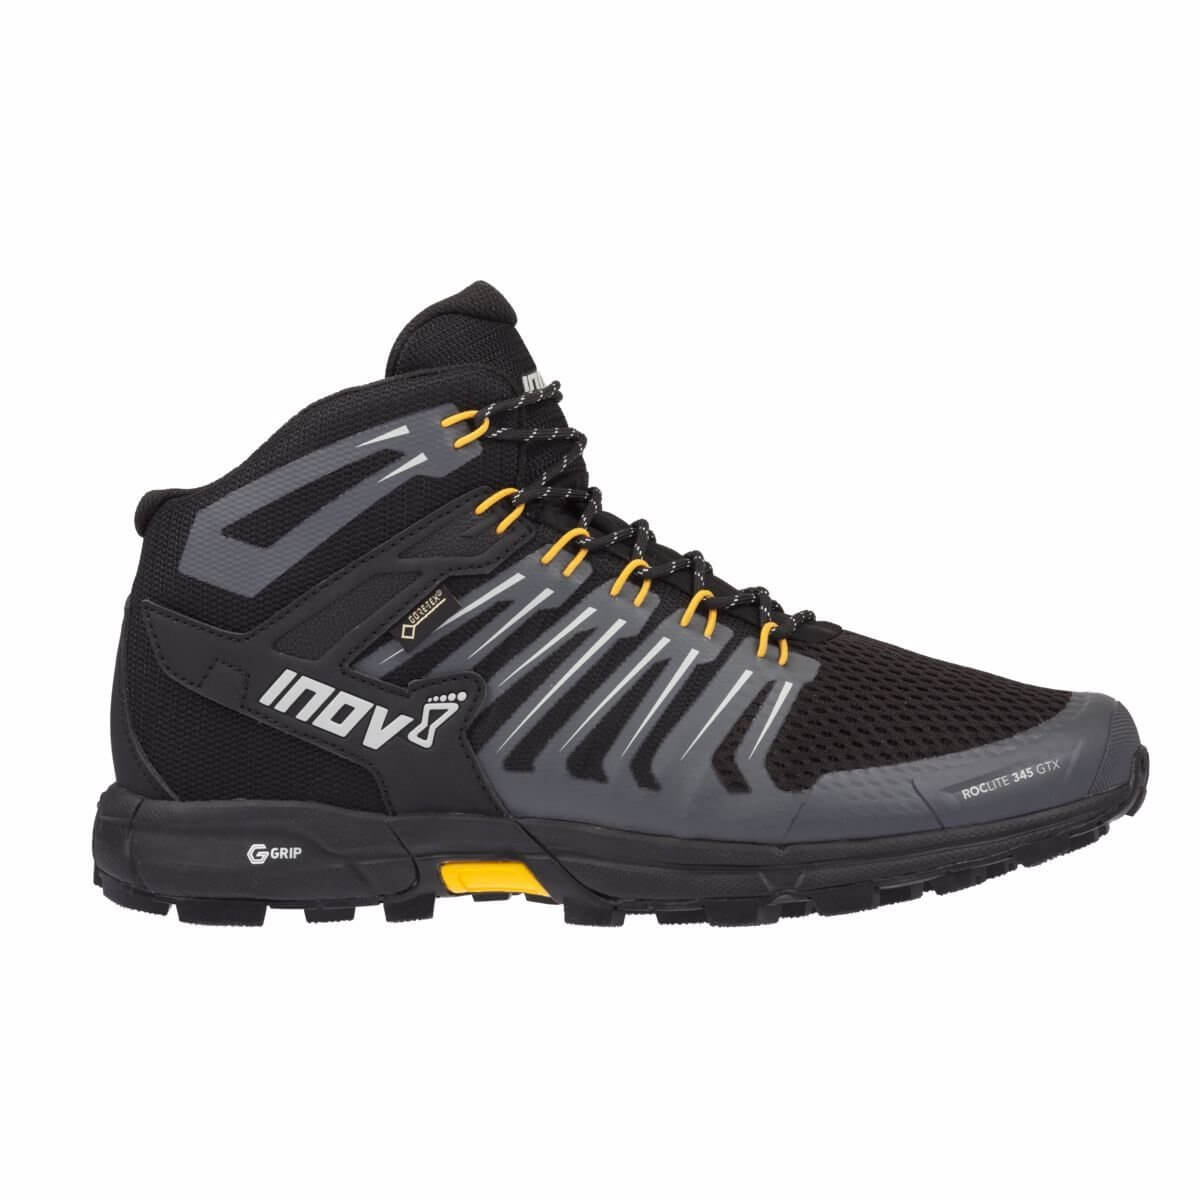 Outdoor topánky Inov-8 ROCLITE 345 GTX (M) black/yellow černá se žlutou